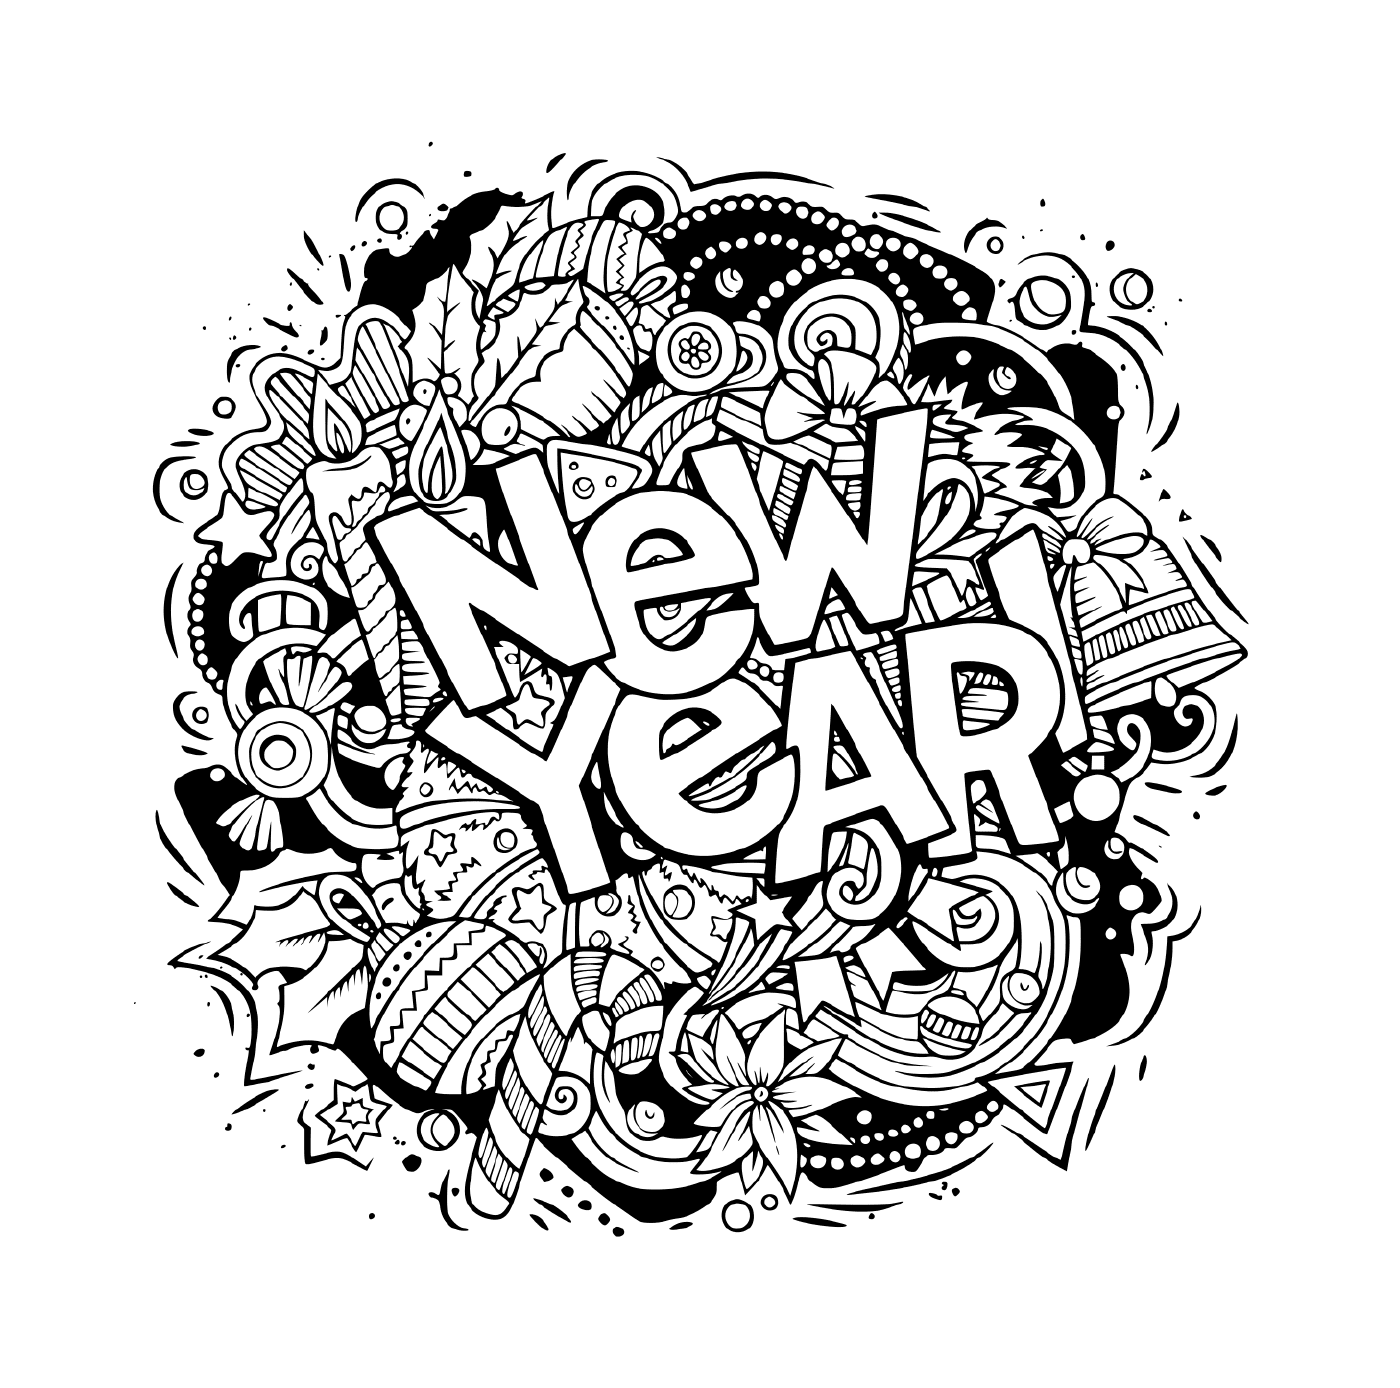  Doodles, objetos y elementos para el nuevo año 